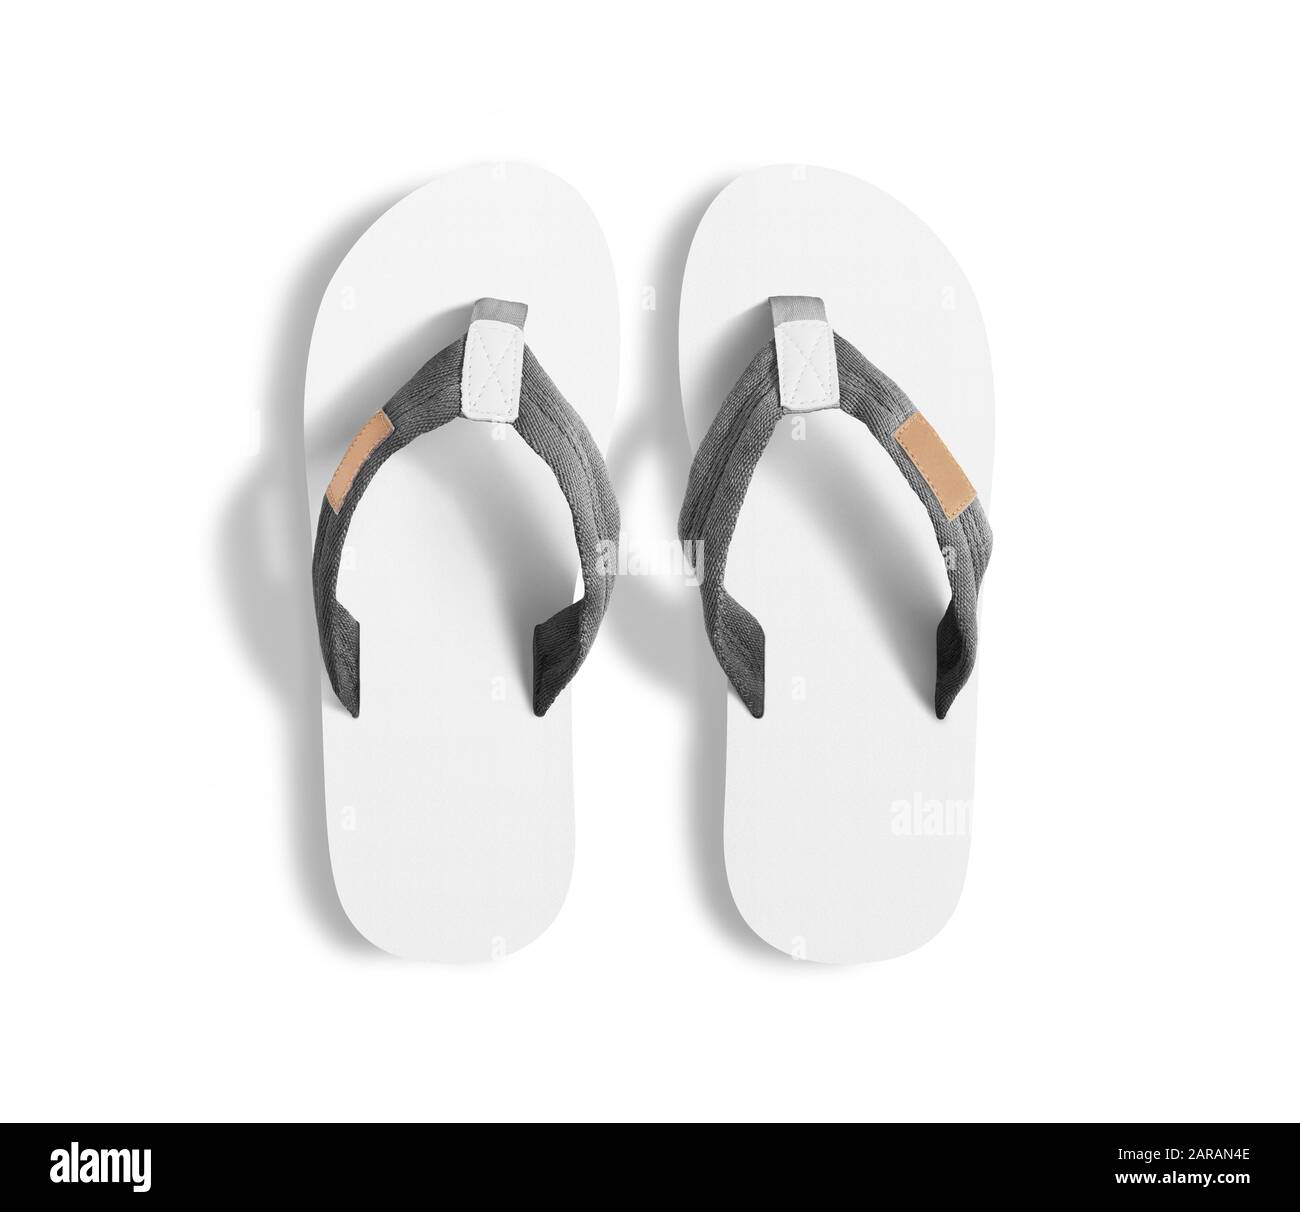 plain white spa slippers